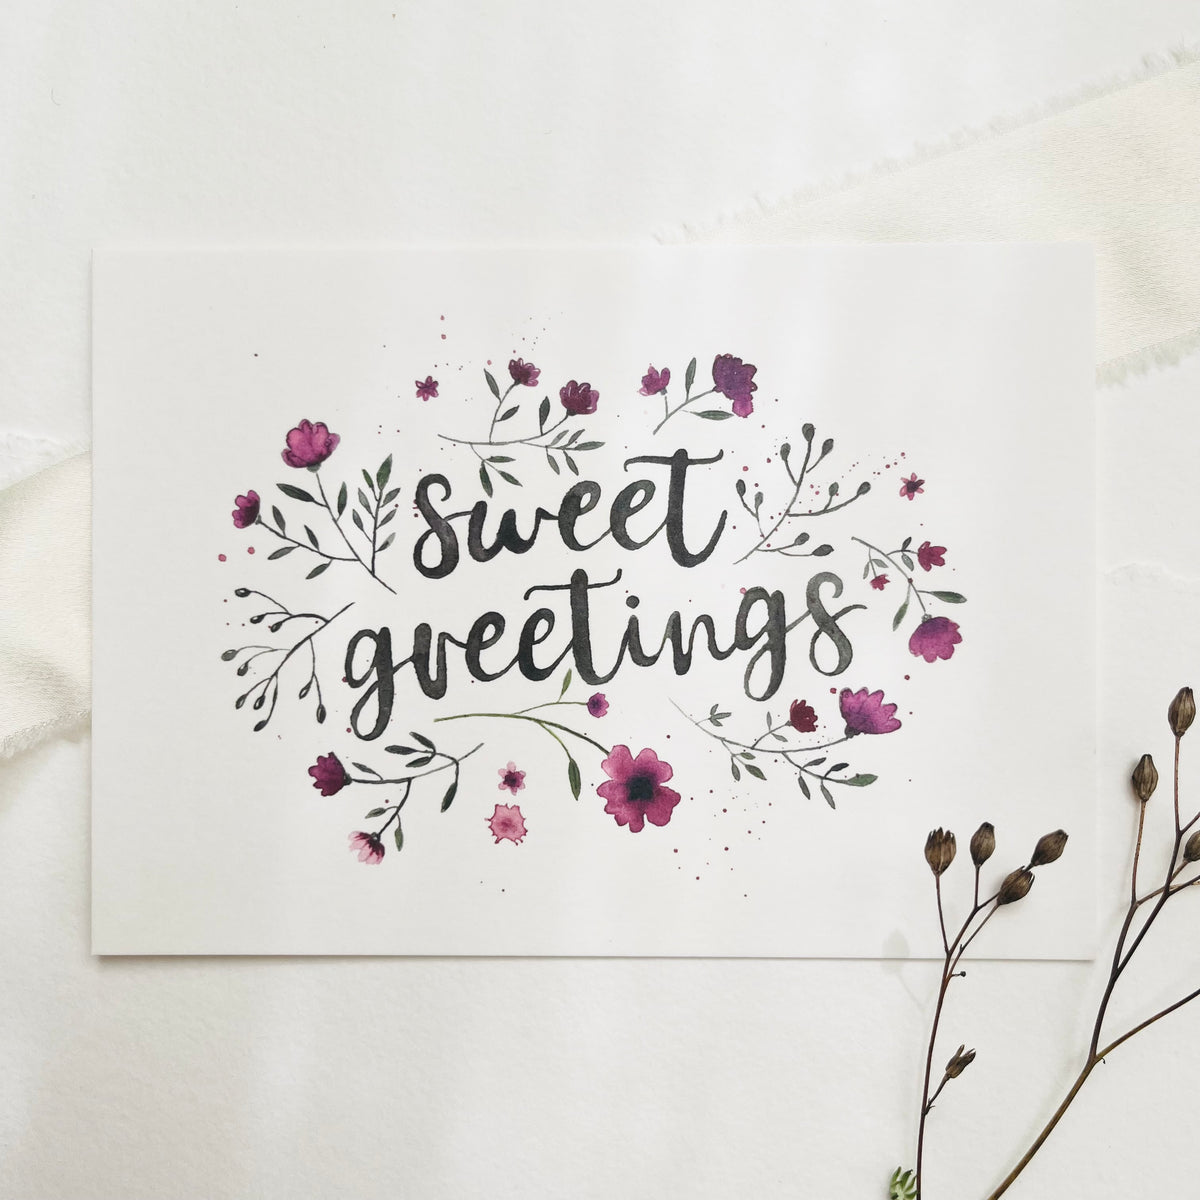 Postkarte - Sweet Greetings